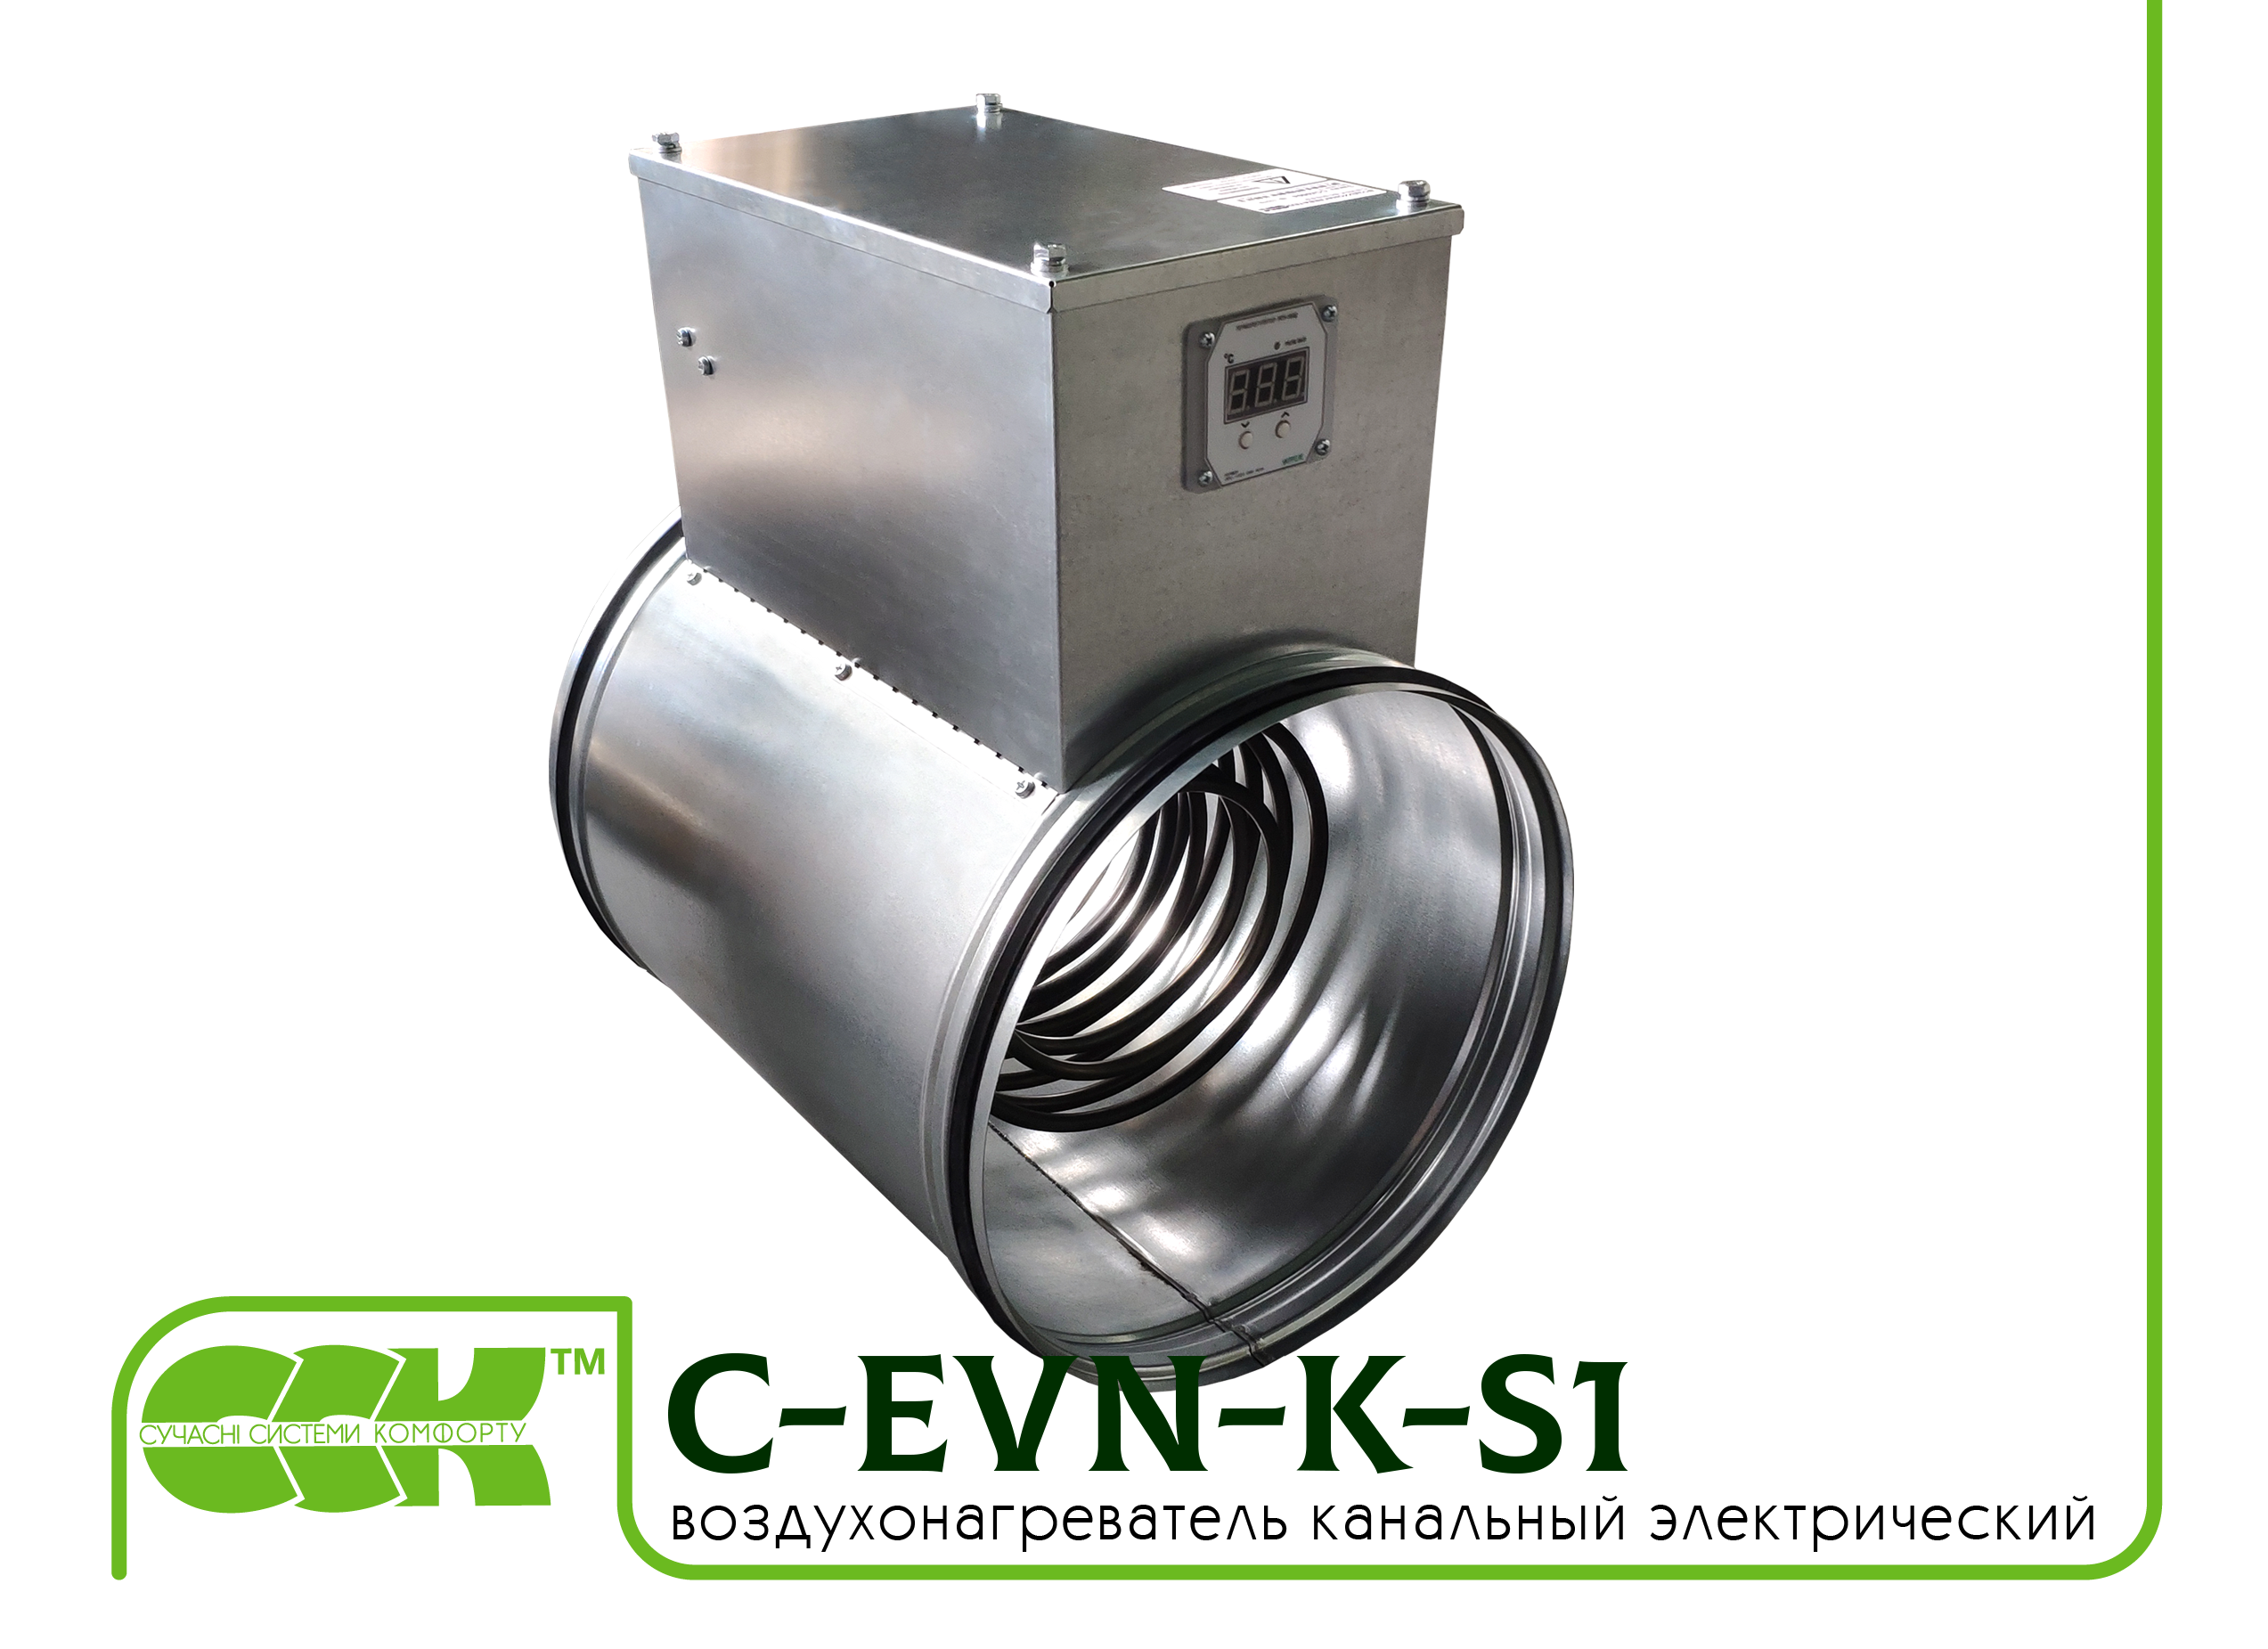 Воздухонагреватель канальный электрический для круглых каналов C-EVN-K-S1-125-0,8